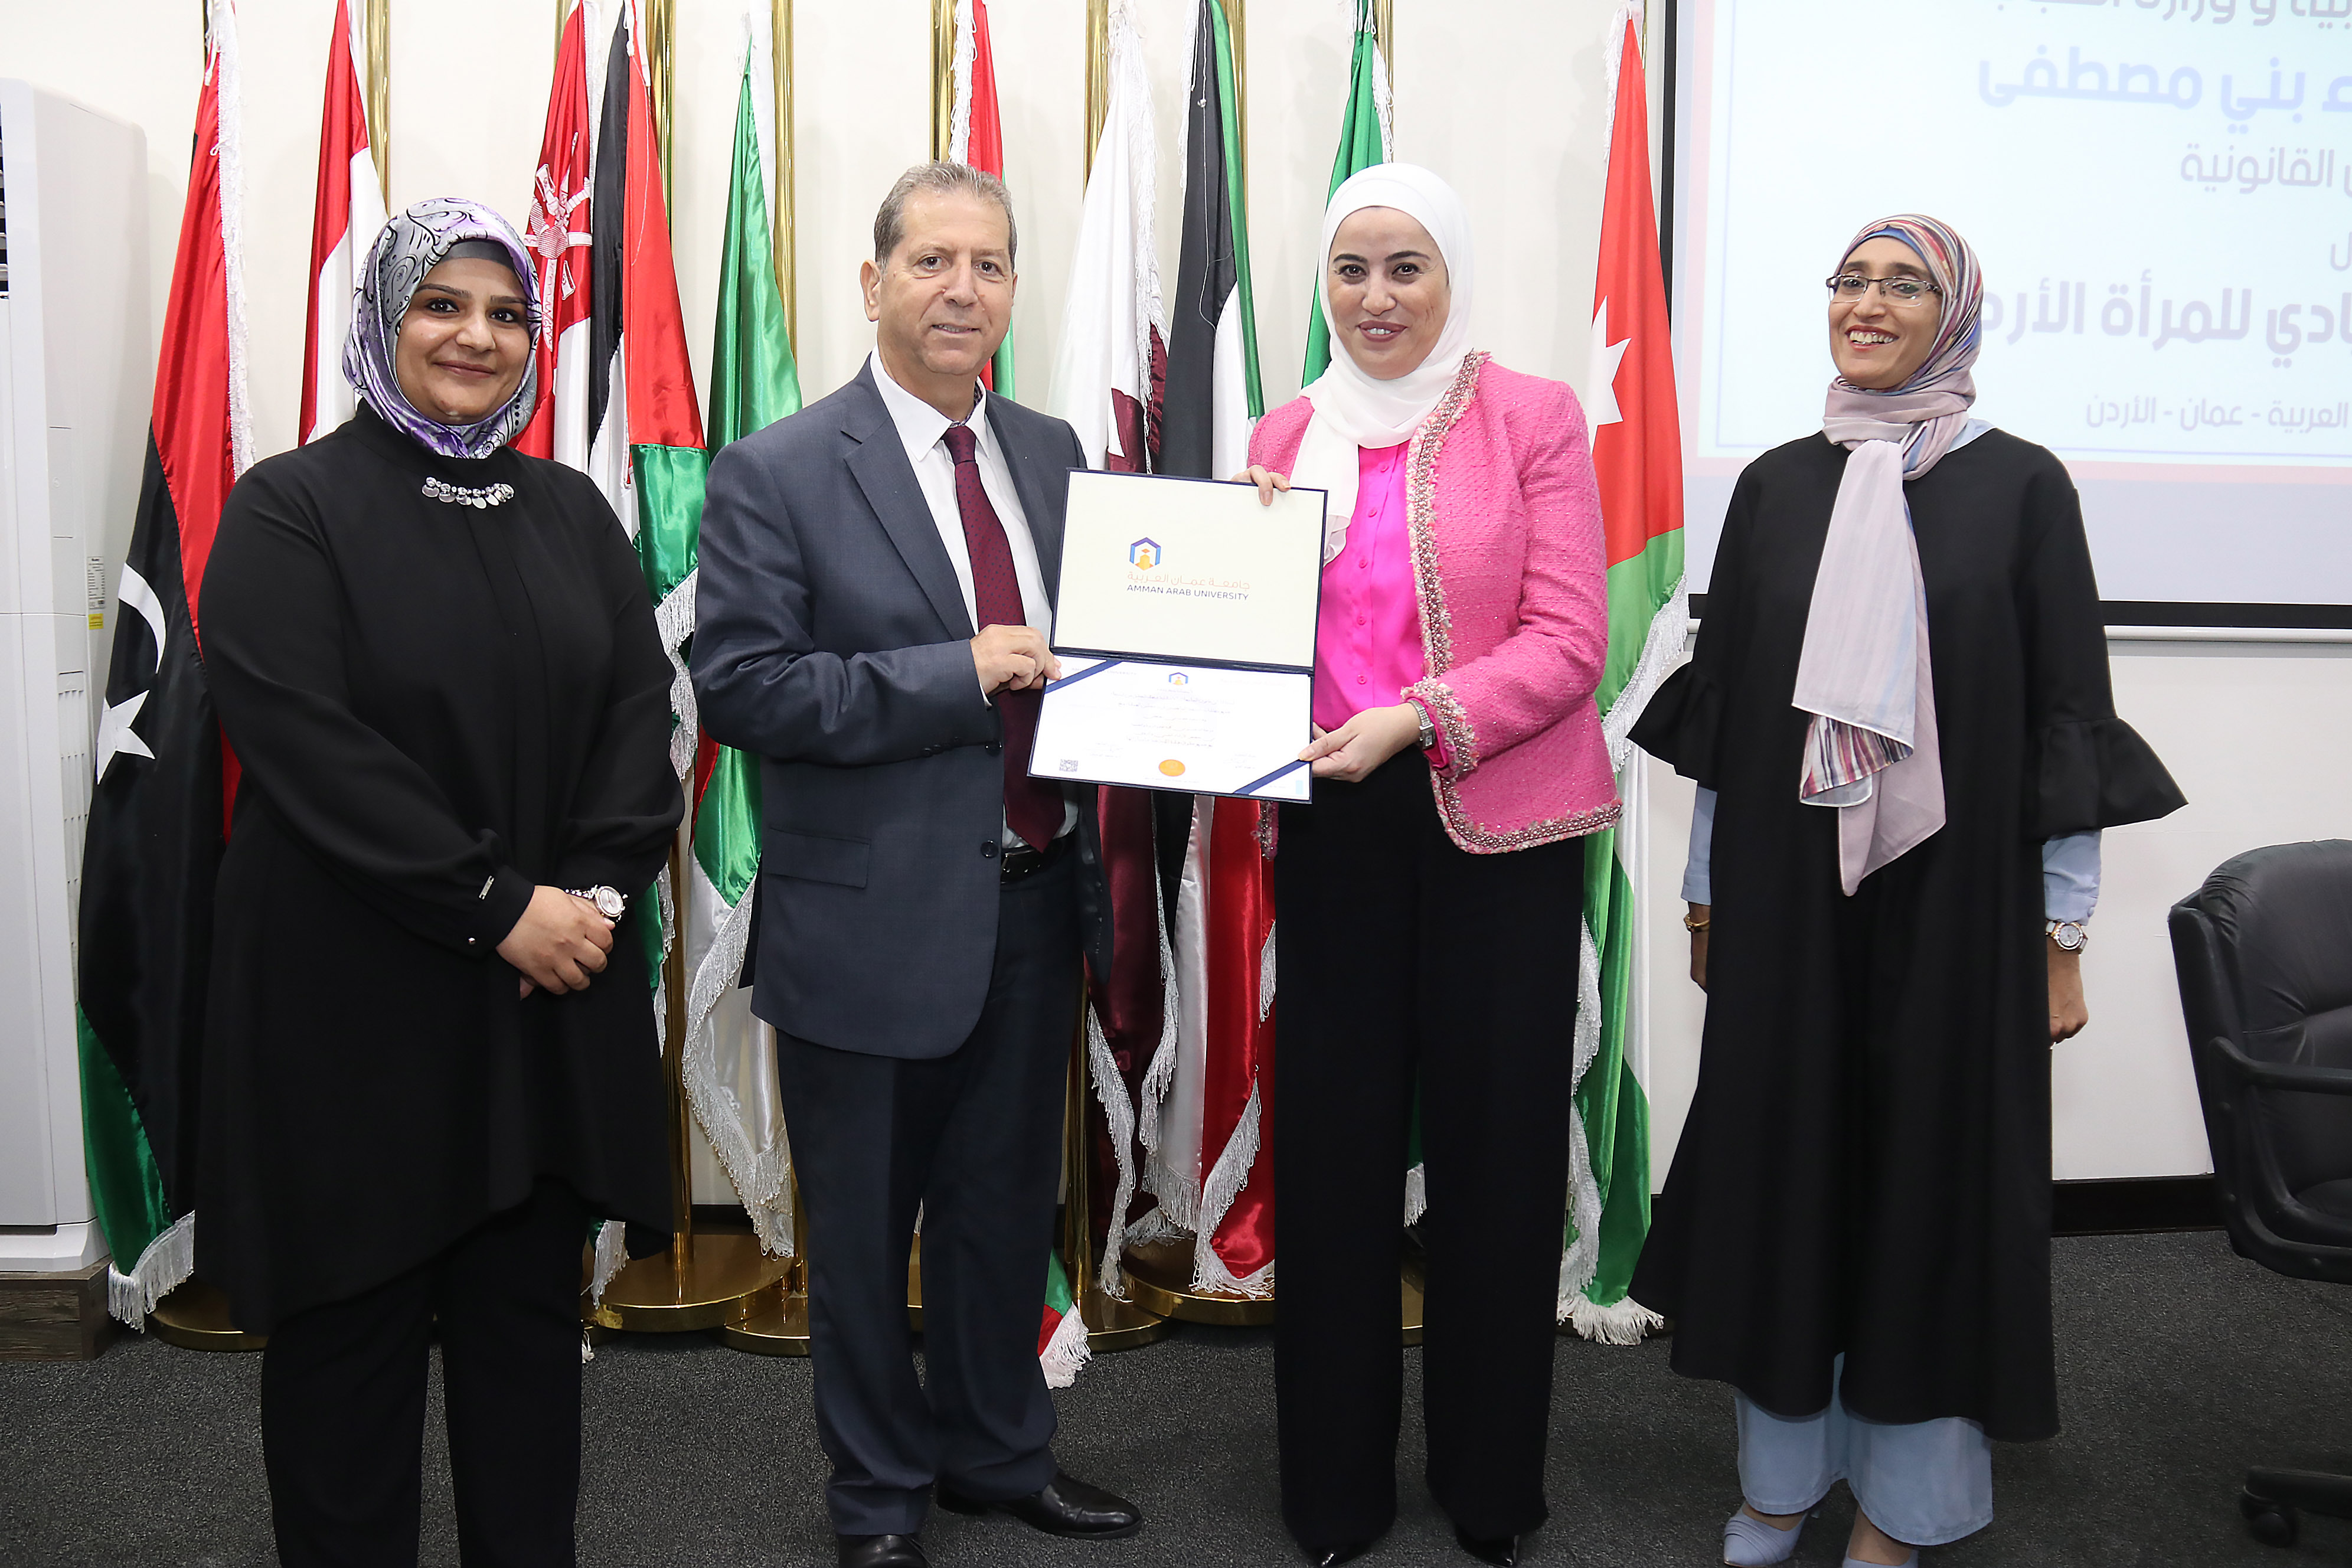 ندوة "التمكين السياسي والقيادي للمرأة الأردنية" في عمان العربية11